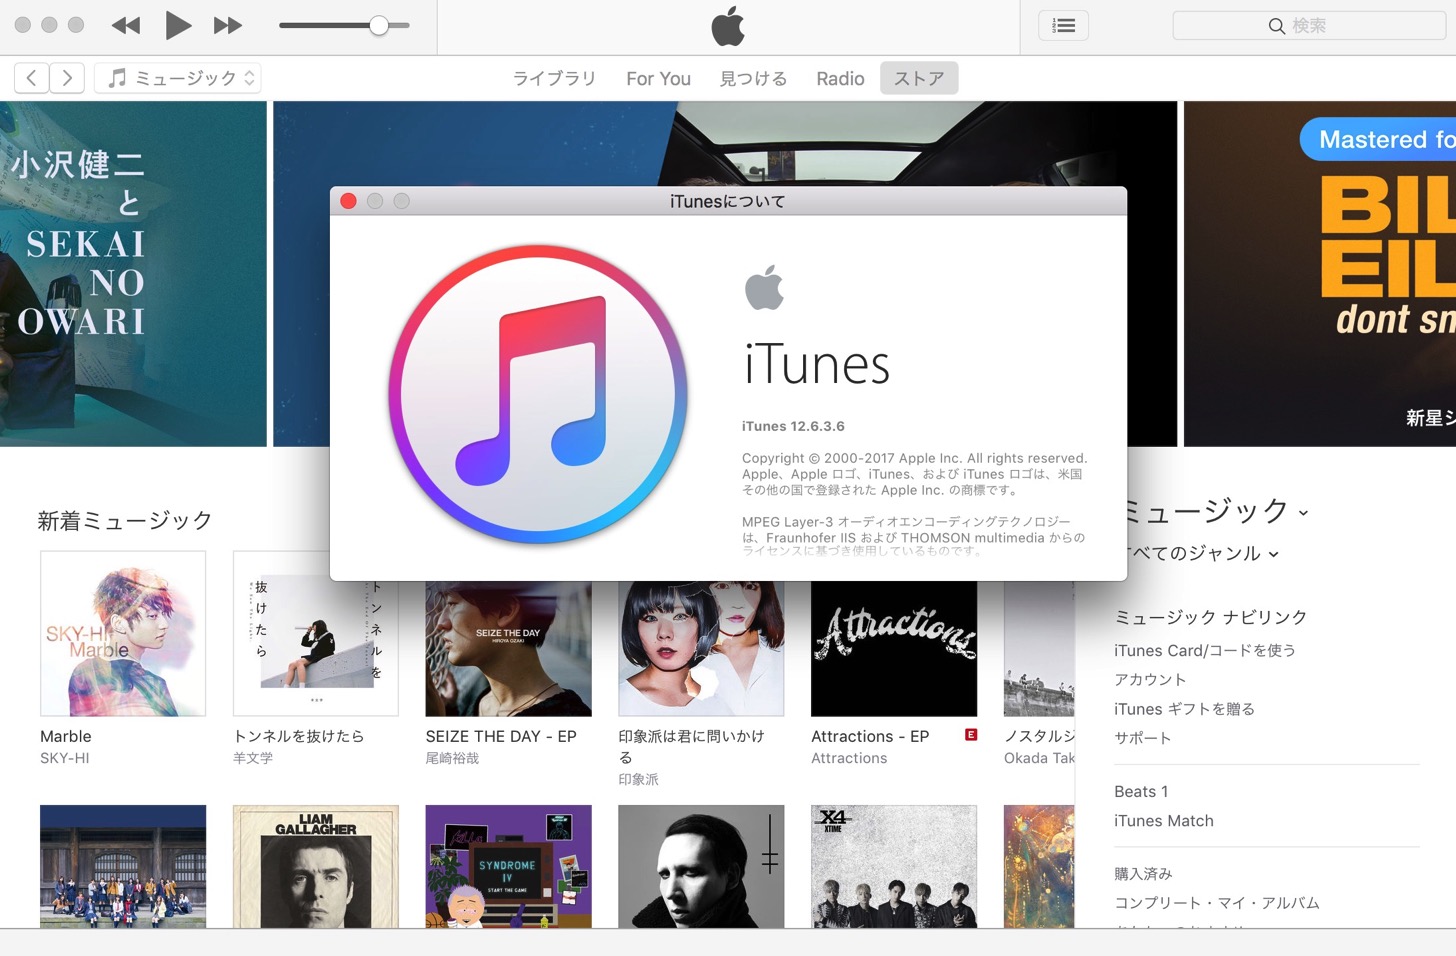 iTunes 12.6.3